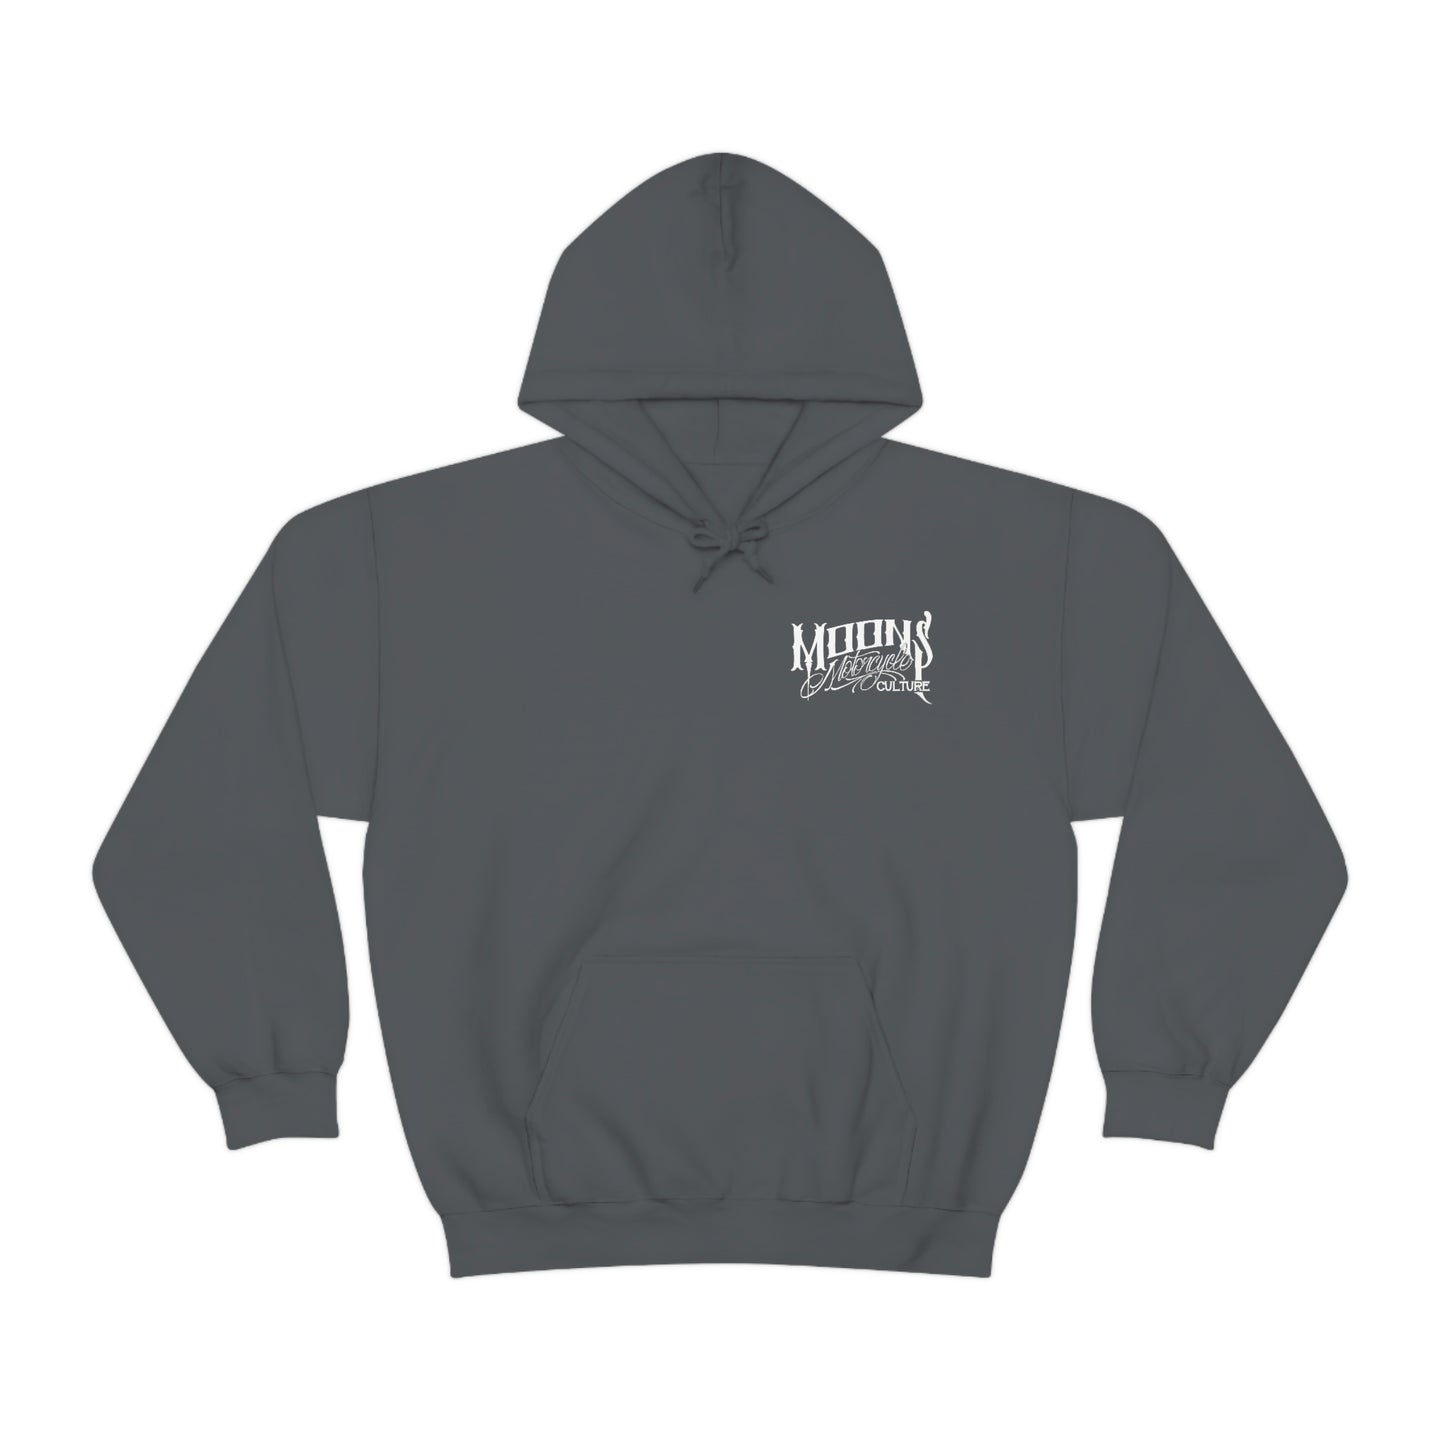 MOONSMC® FXDT / T-SPORT MURICA Hooded Sweatshirt